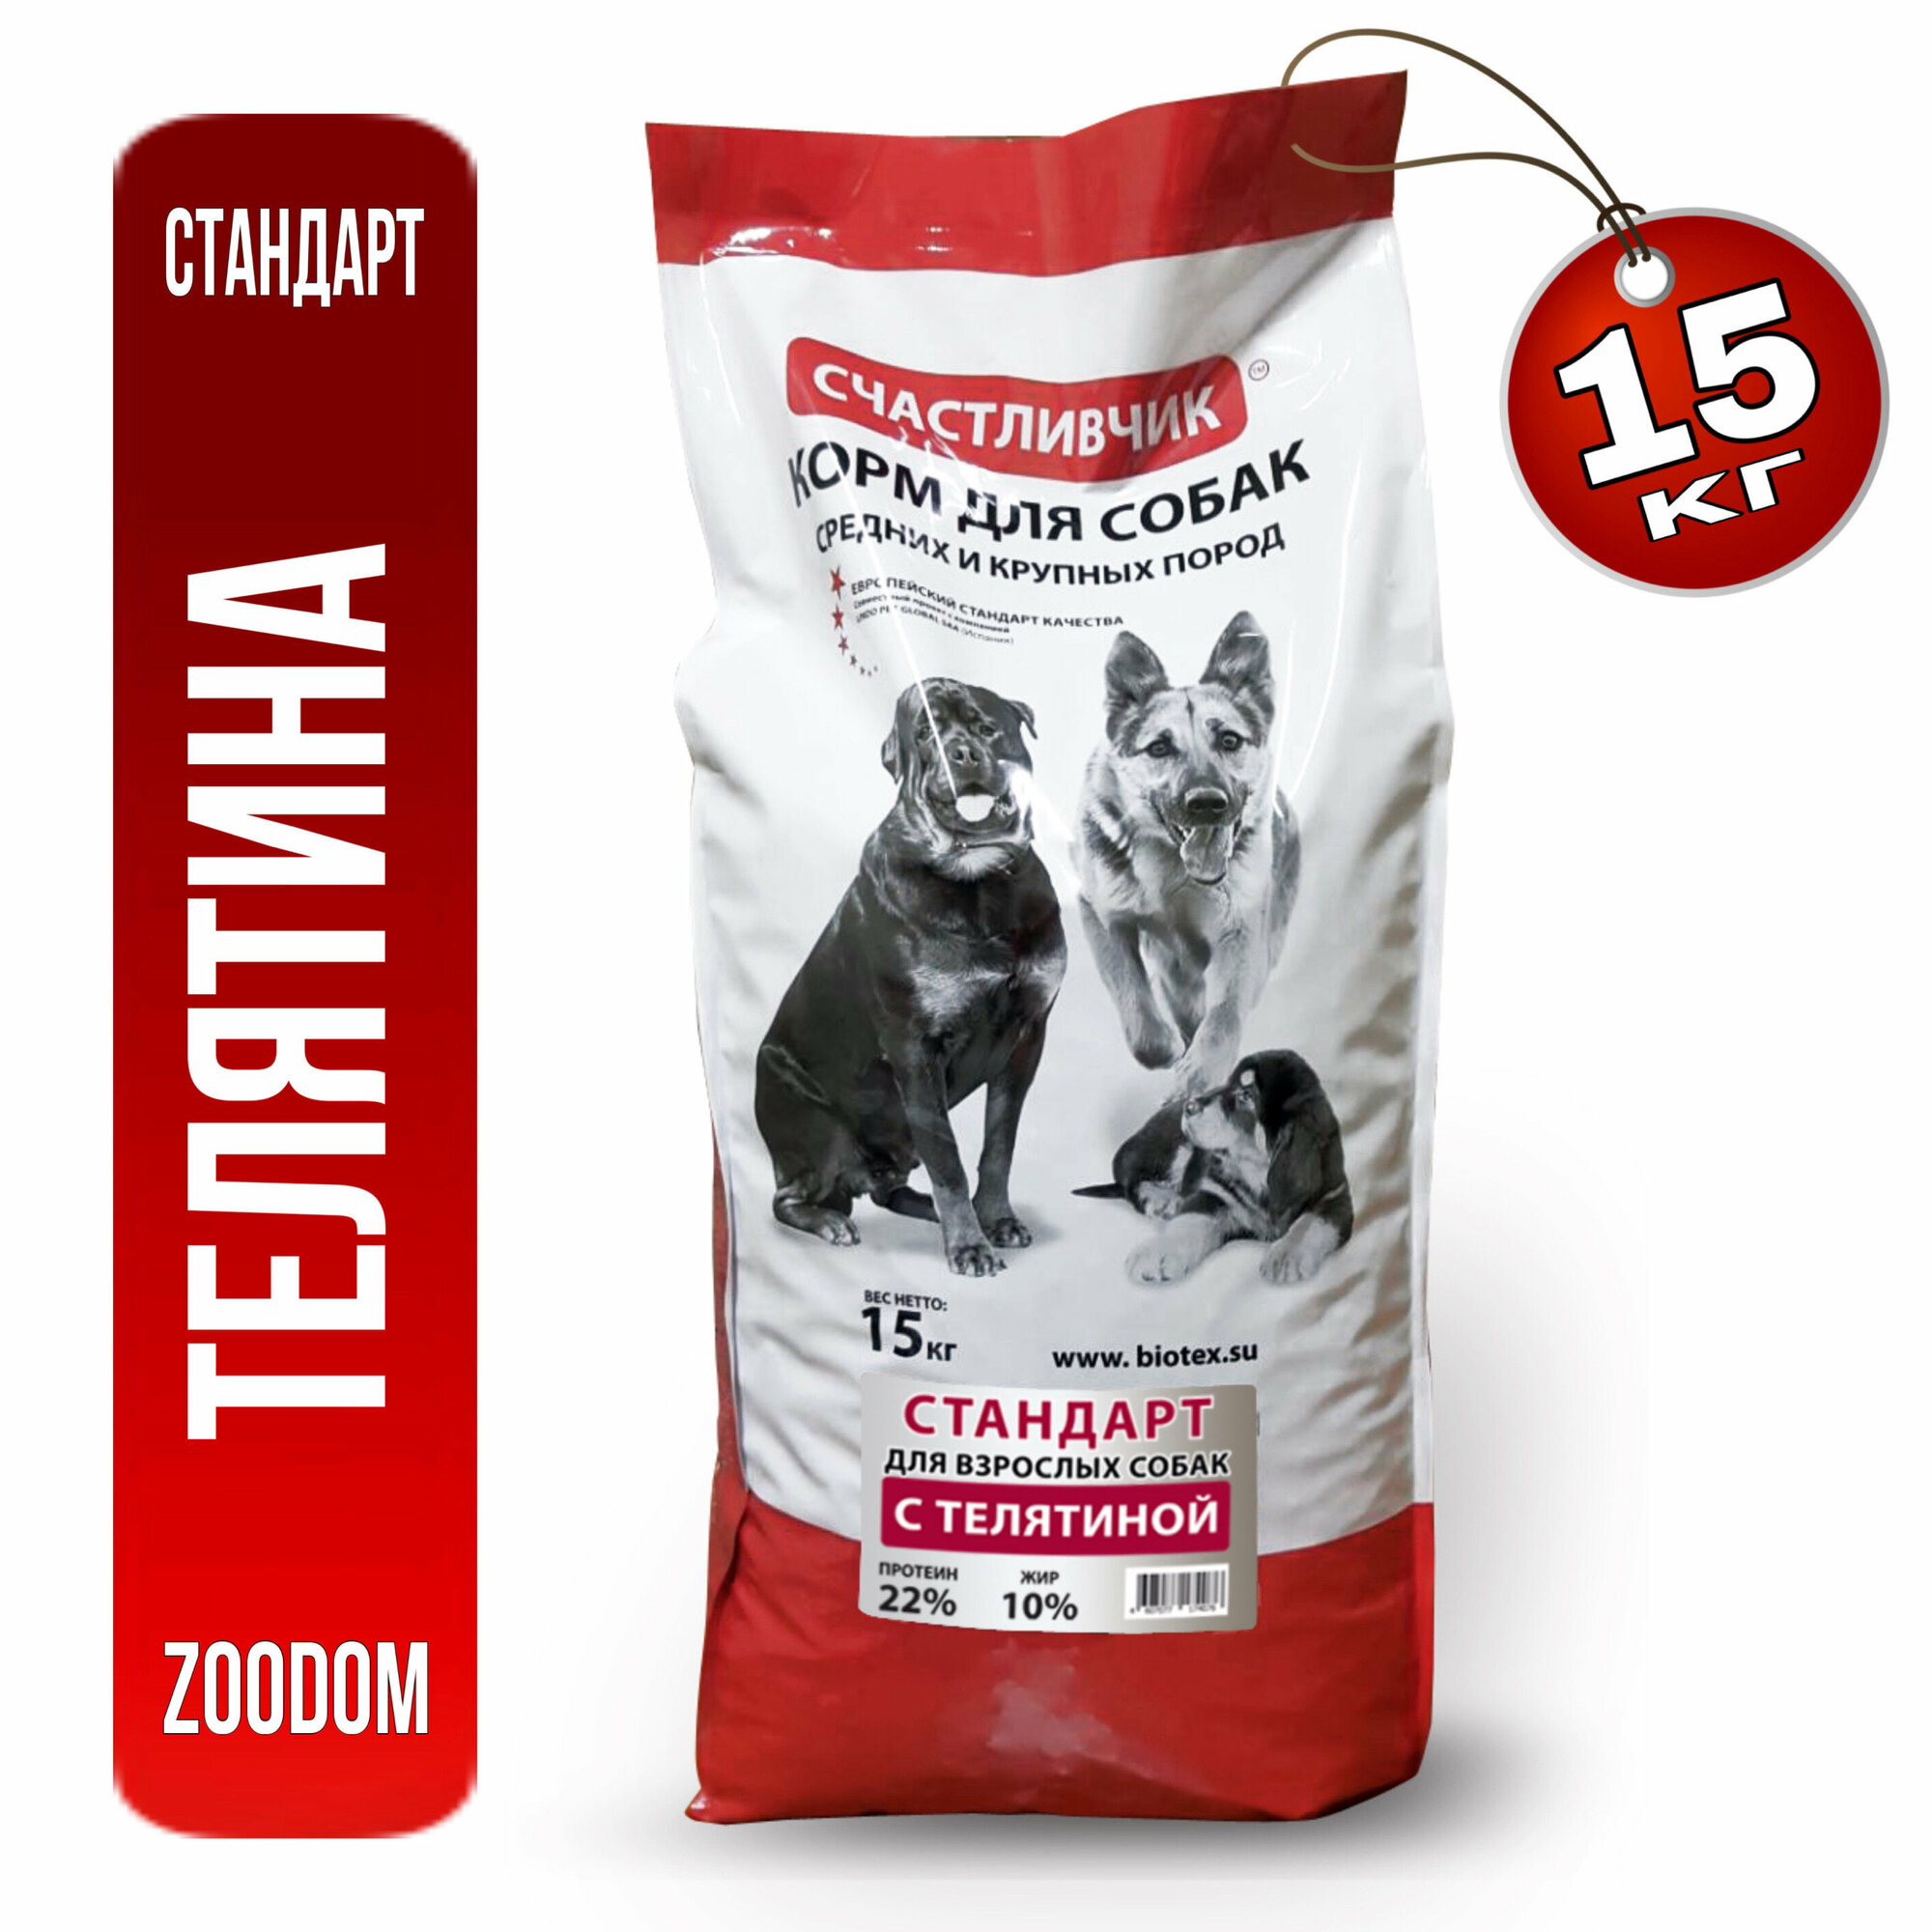 Сухой корм "Счастливчик" для собак средних и крупных пород "Стандарт с Телятиной" 15 кг